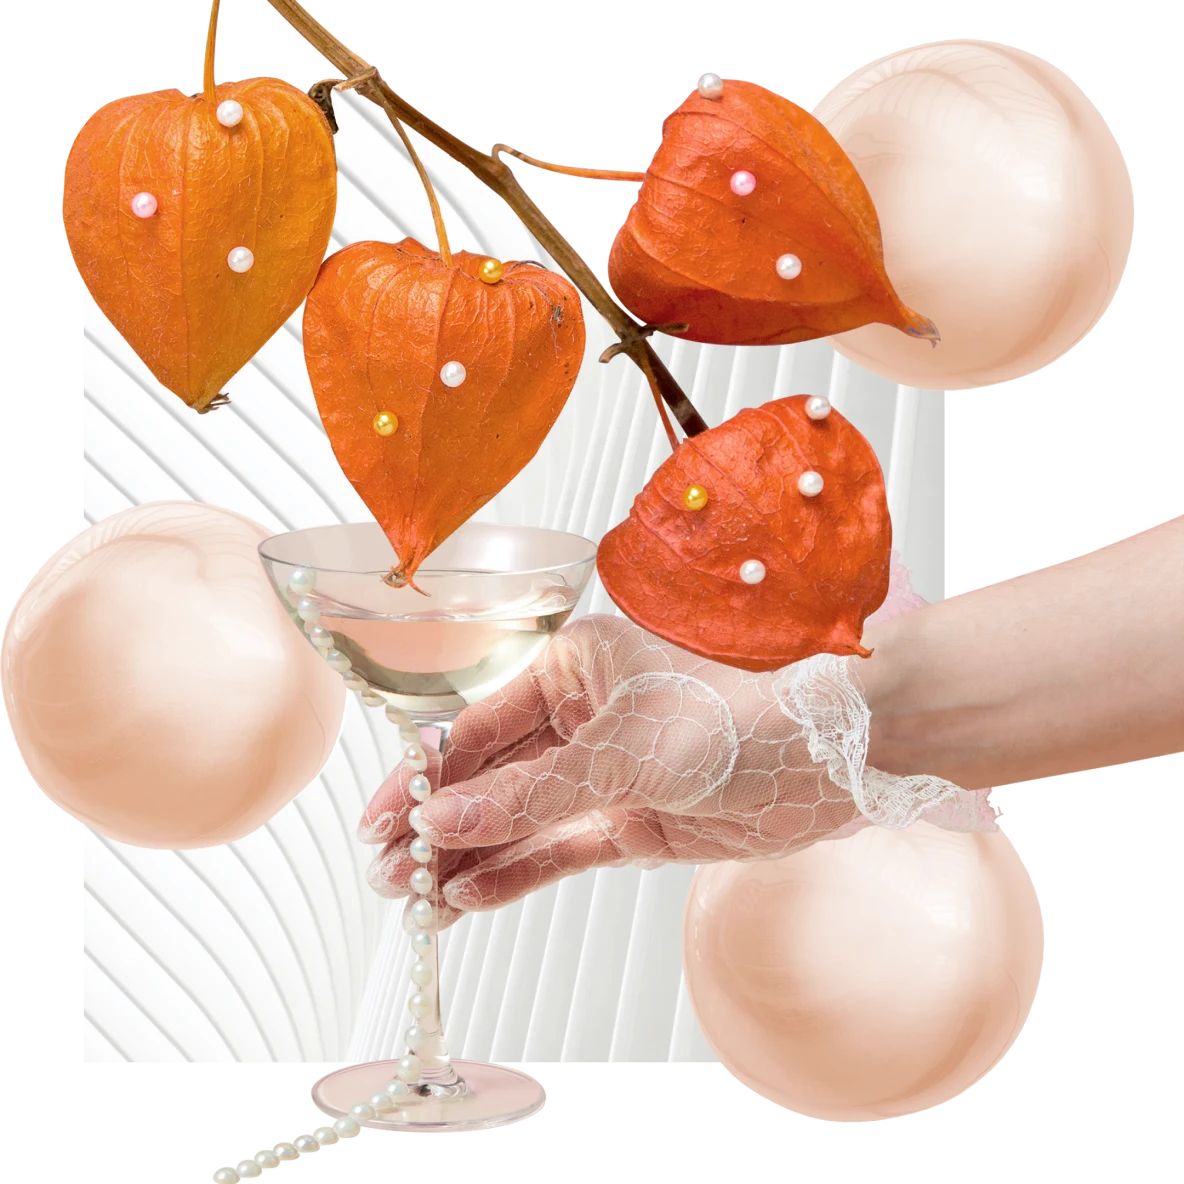 Cuatro vainas de physalis naranja en una rama fina. Fondo de tres perlas anaranjadas traslúcidas, copa de martini sostenida por una mano con un guante de encaje y tira de perlas y patrón de abanico blanco.
